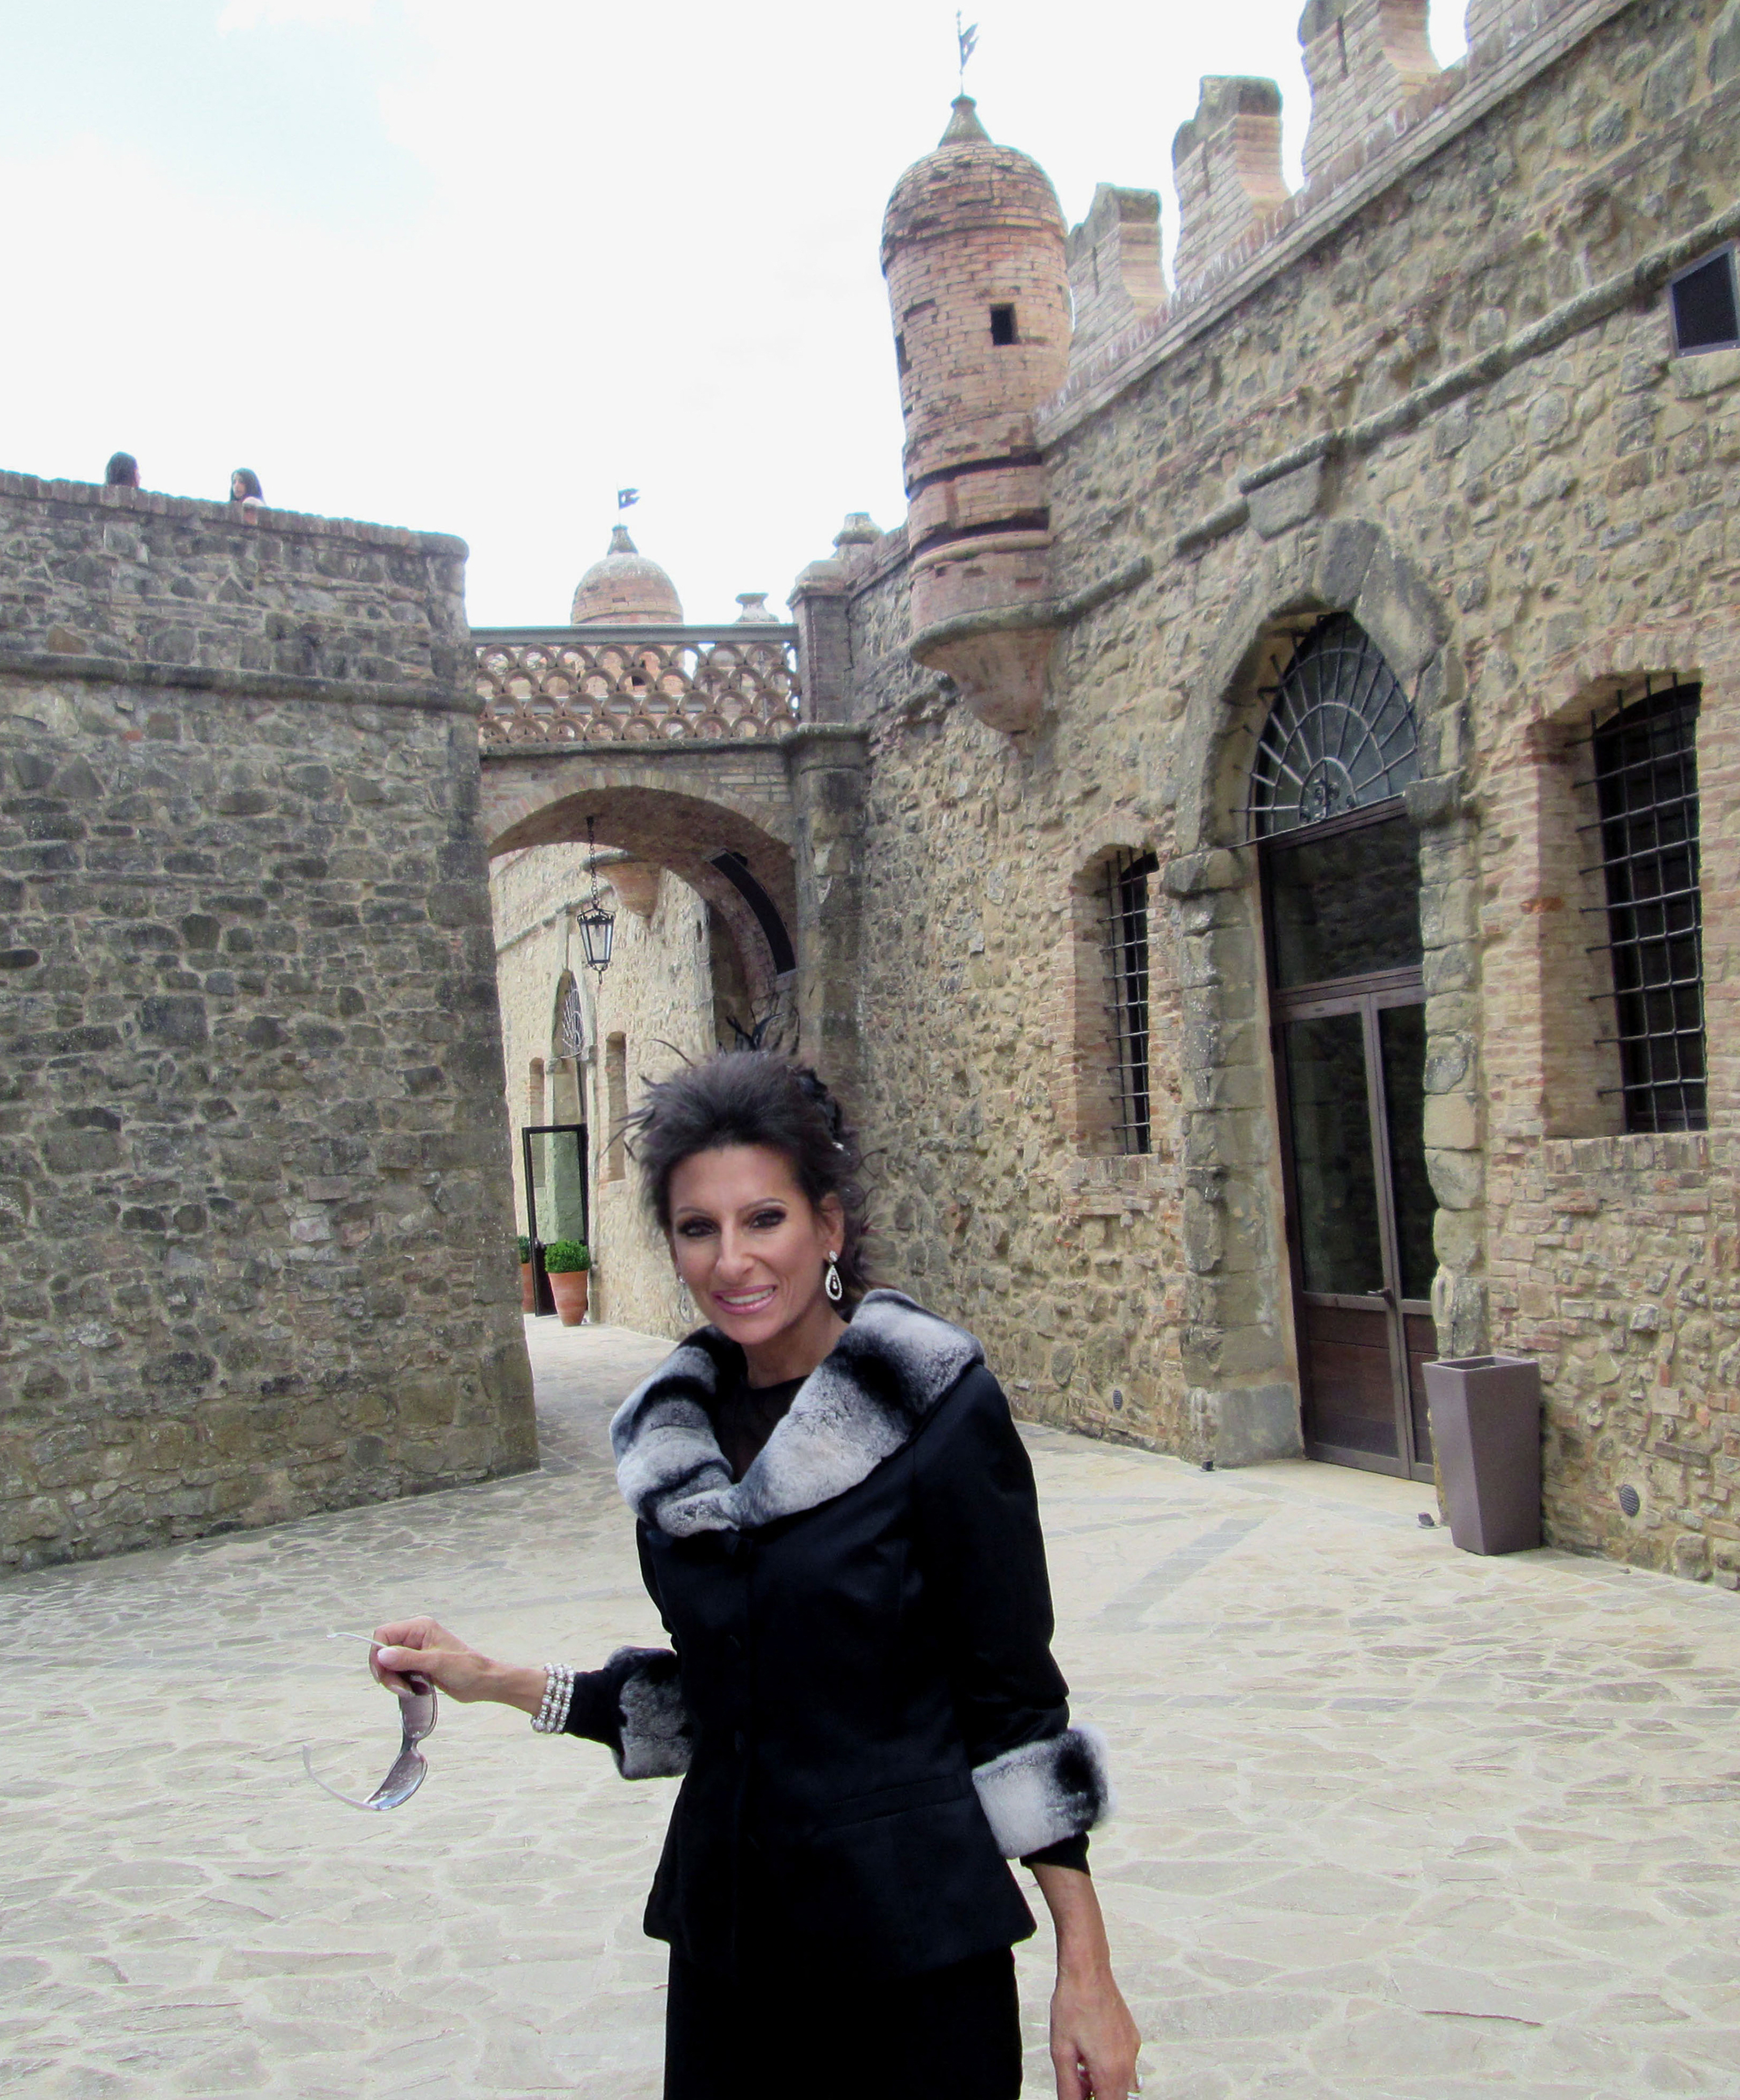 Lucia Aliberti⚘Castle of Solfagnano⚘Perugia⚘Special Event⚘Guest⚘:http://www.luciaaliberti.it #luciaaliberti #castleofsolfagnano #perugia #specialevent #guest